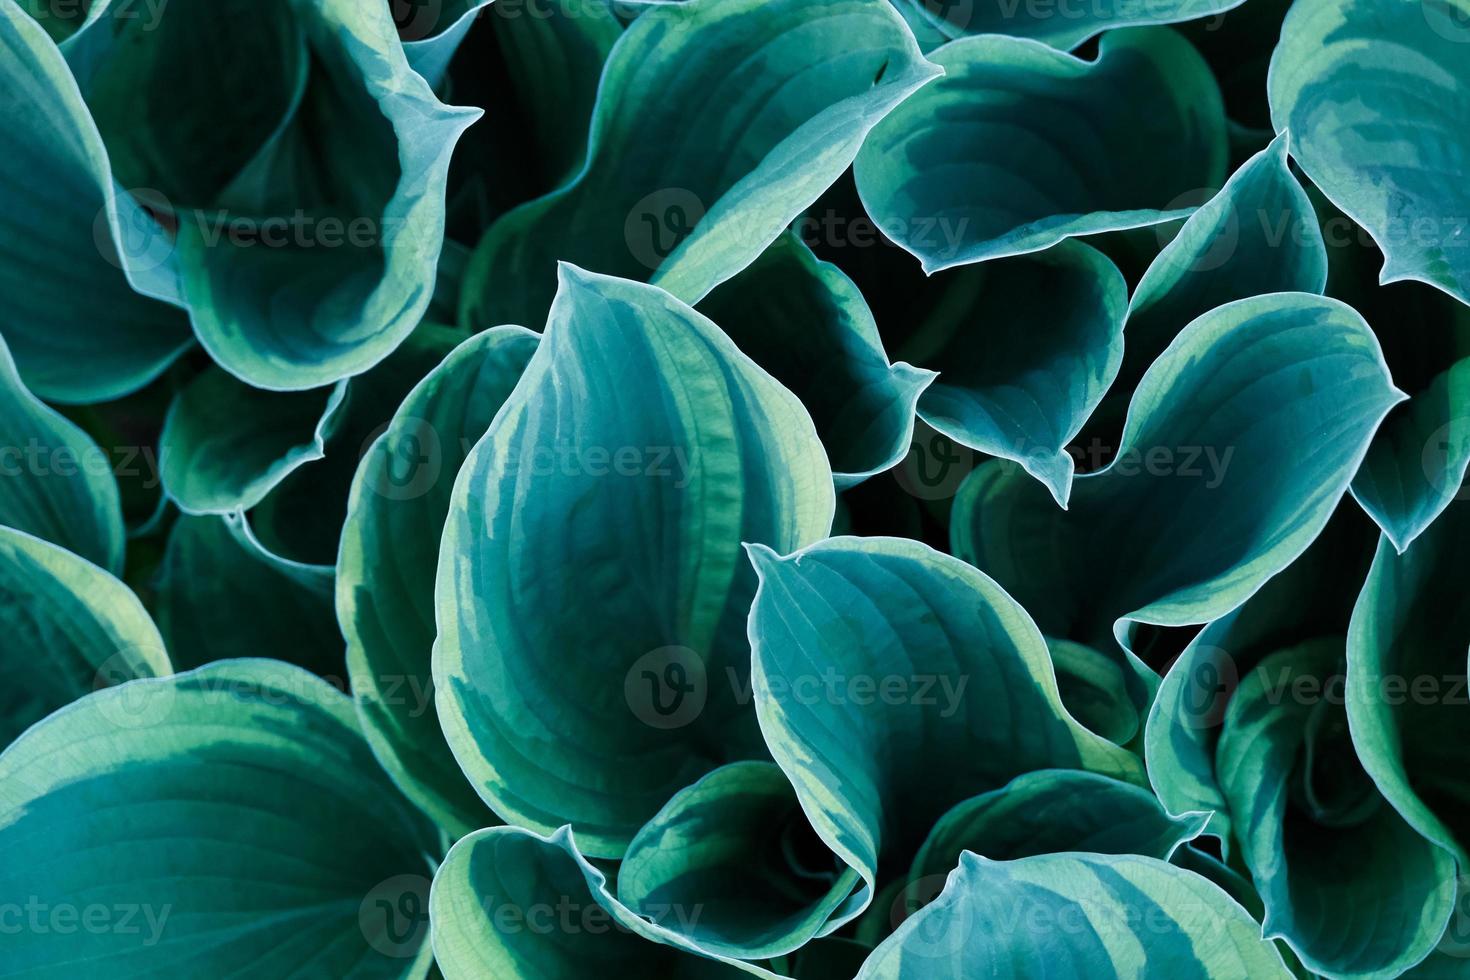 sfondo con un primo piano di foglie di fiori di hosta del giappone blu e verde foto